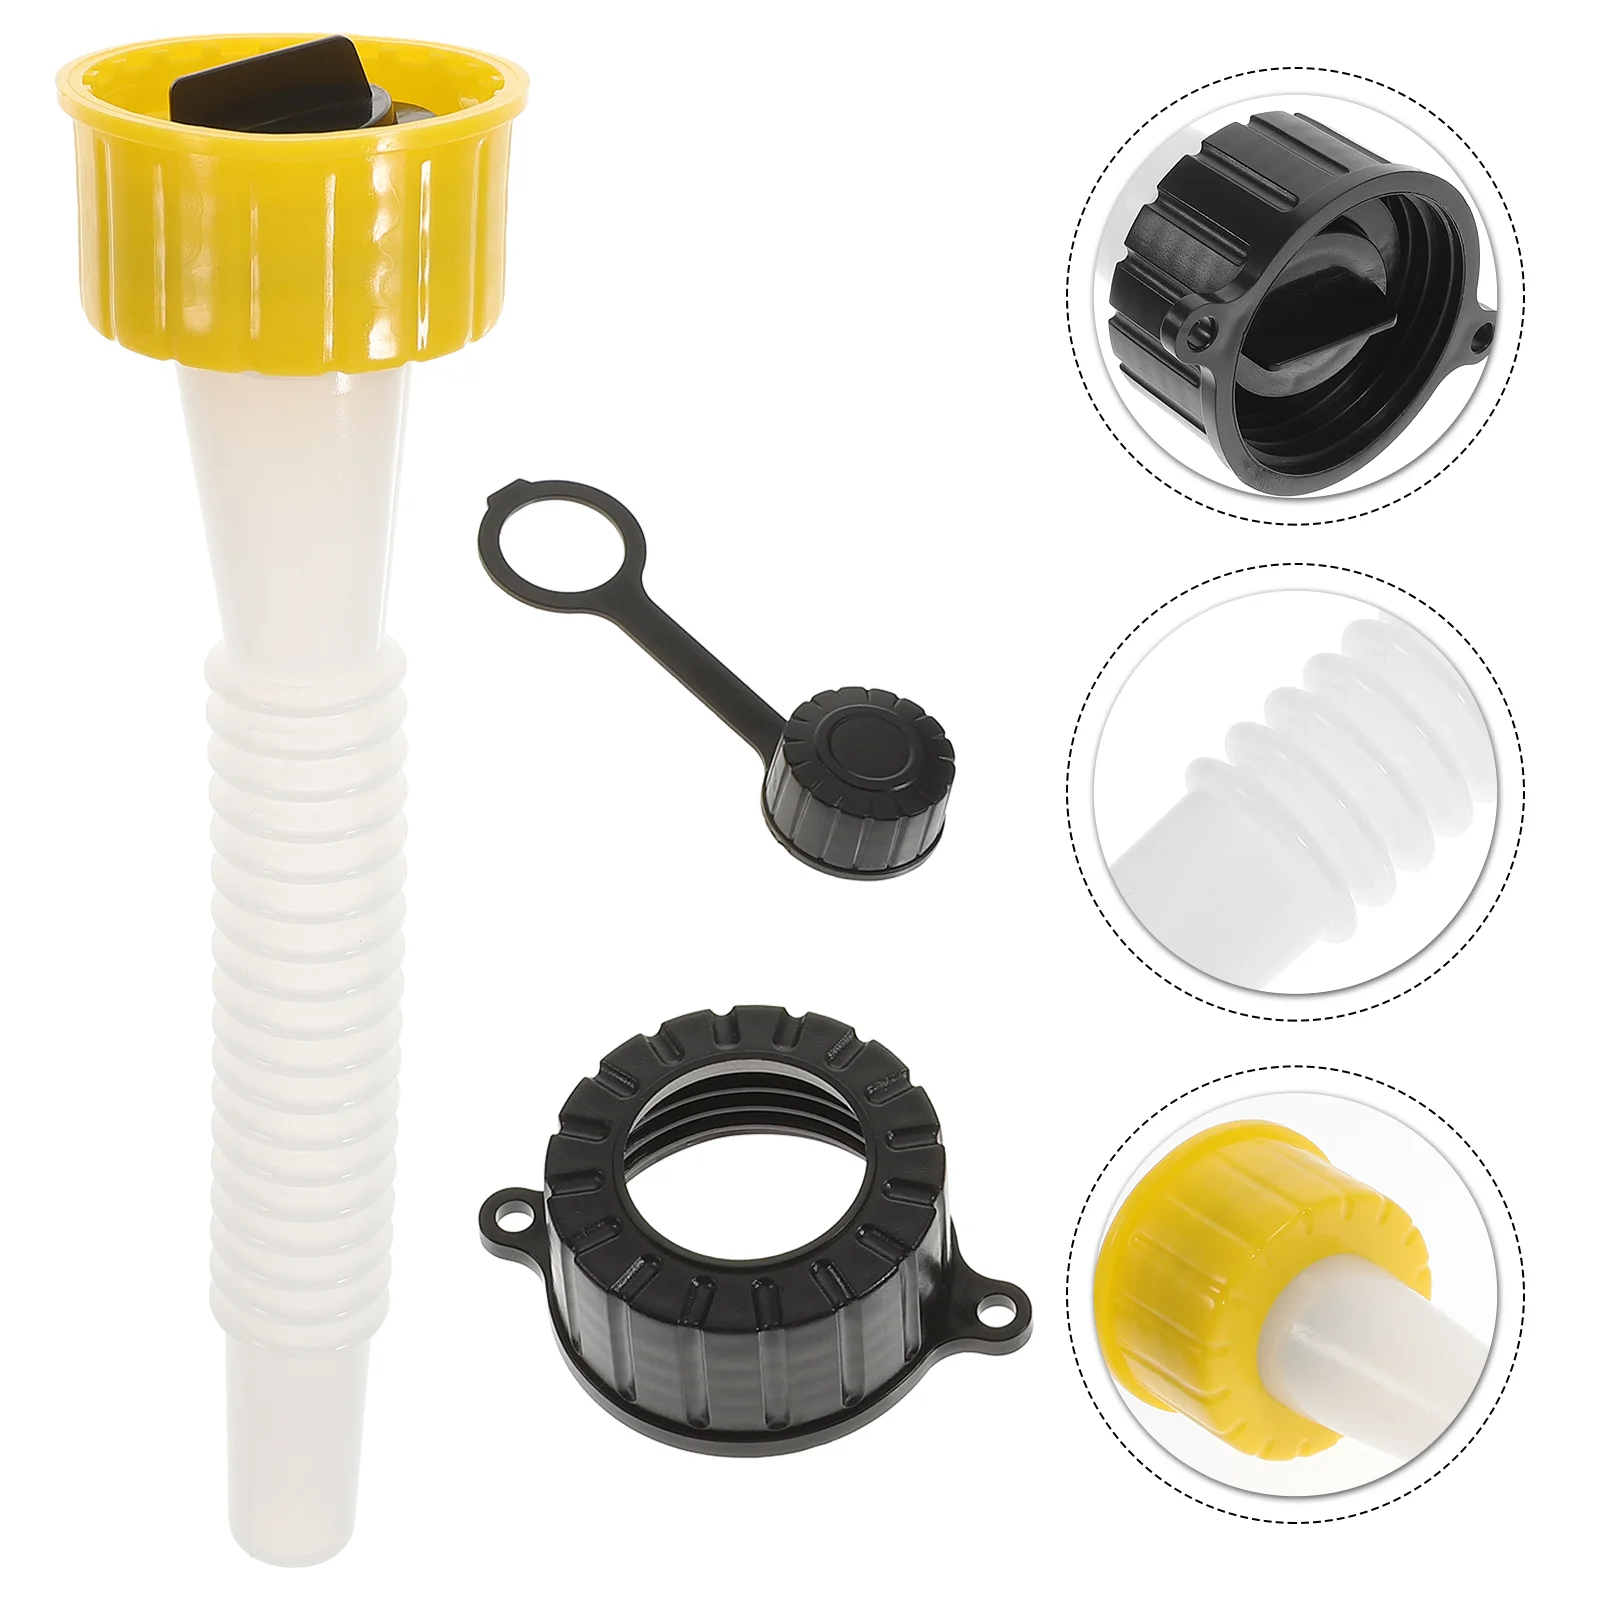 

1 Set of Oil Tank Nozzle Parts Change Gasket Plug Venting Hole Cover Plastic Oil Tank Nozzle Parts